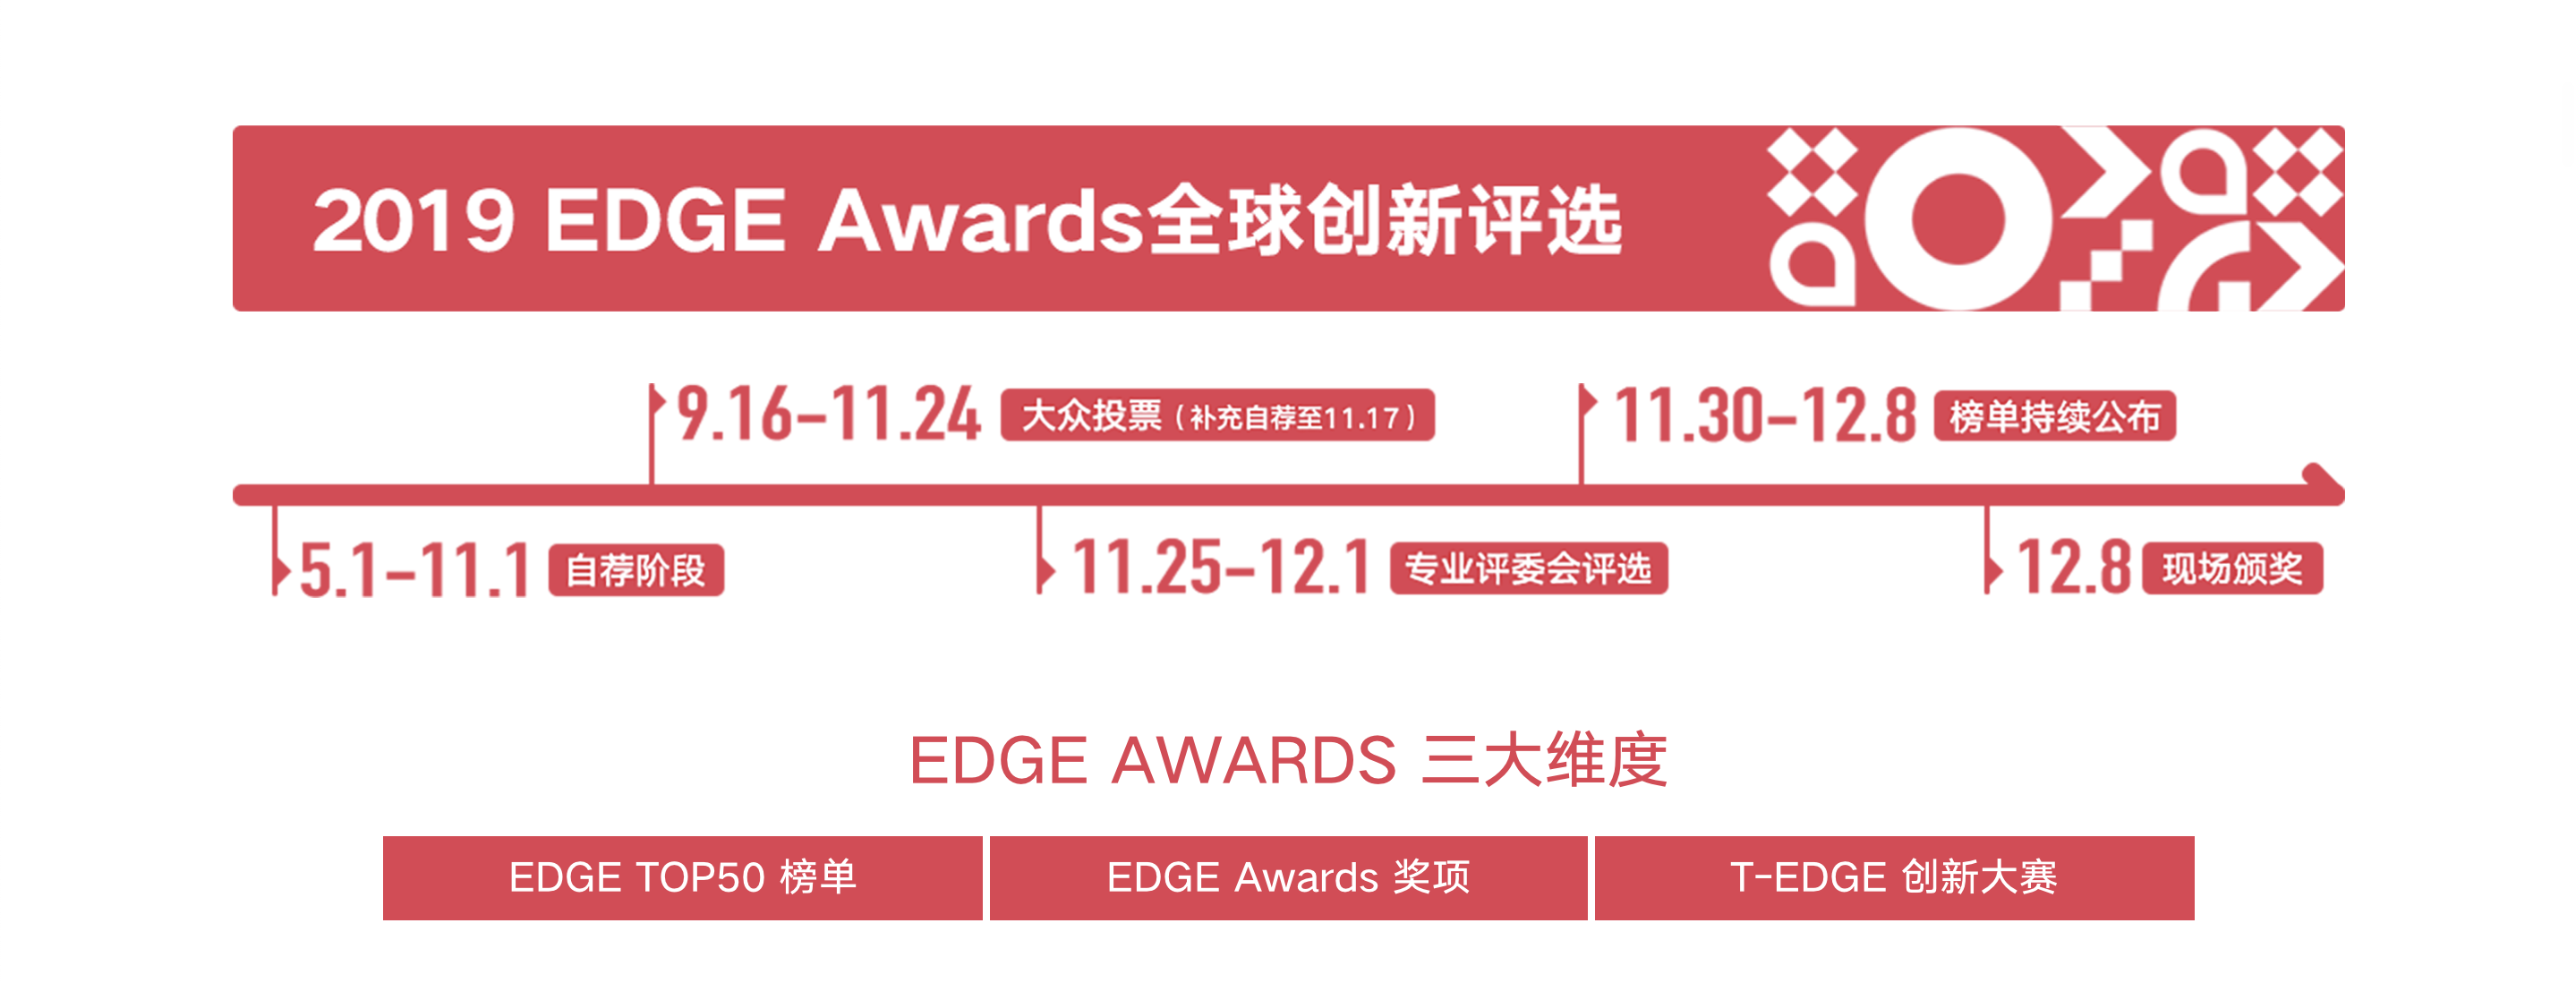 【钛媒体】2019T-EDGE全球创新大会（北京）